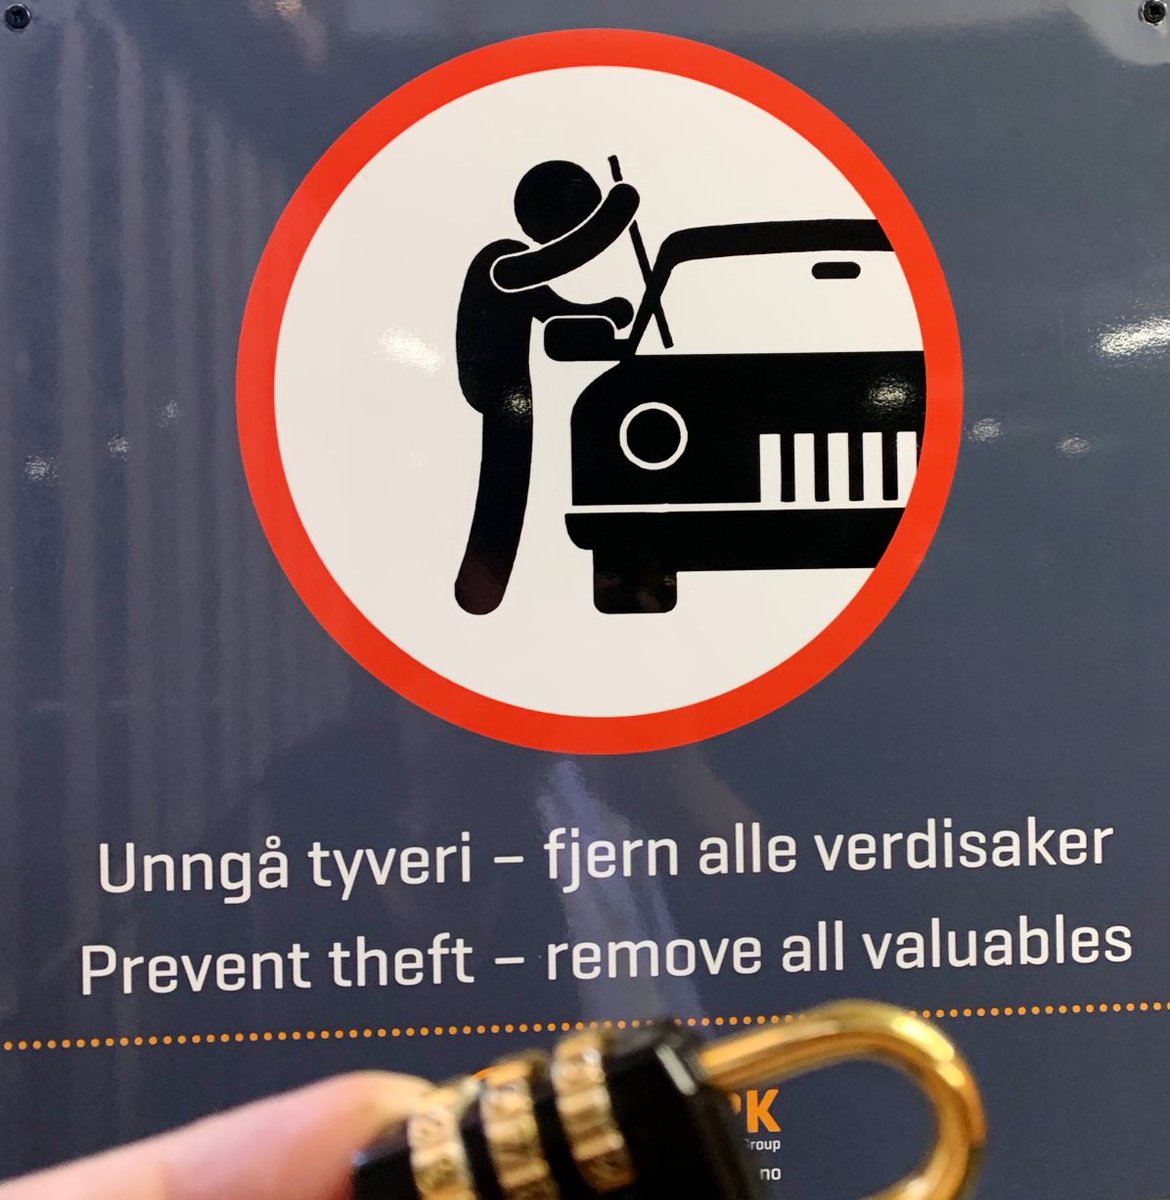 Greit tips👍

Ikke legg #verdisaker synlig i bilen.

#brukhue i forkant og mindre tid på å rydde opp etter insidenter👍

#hengelås